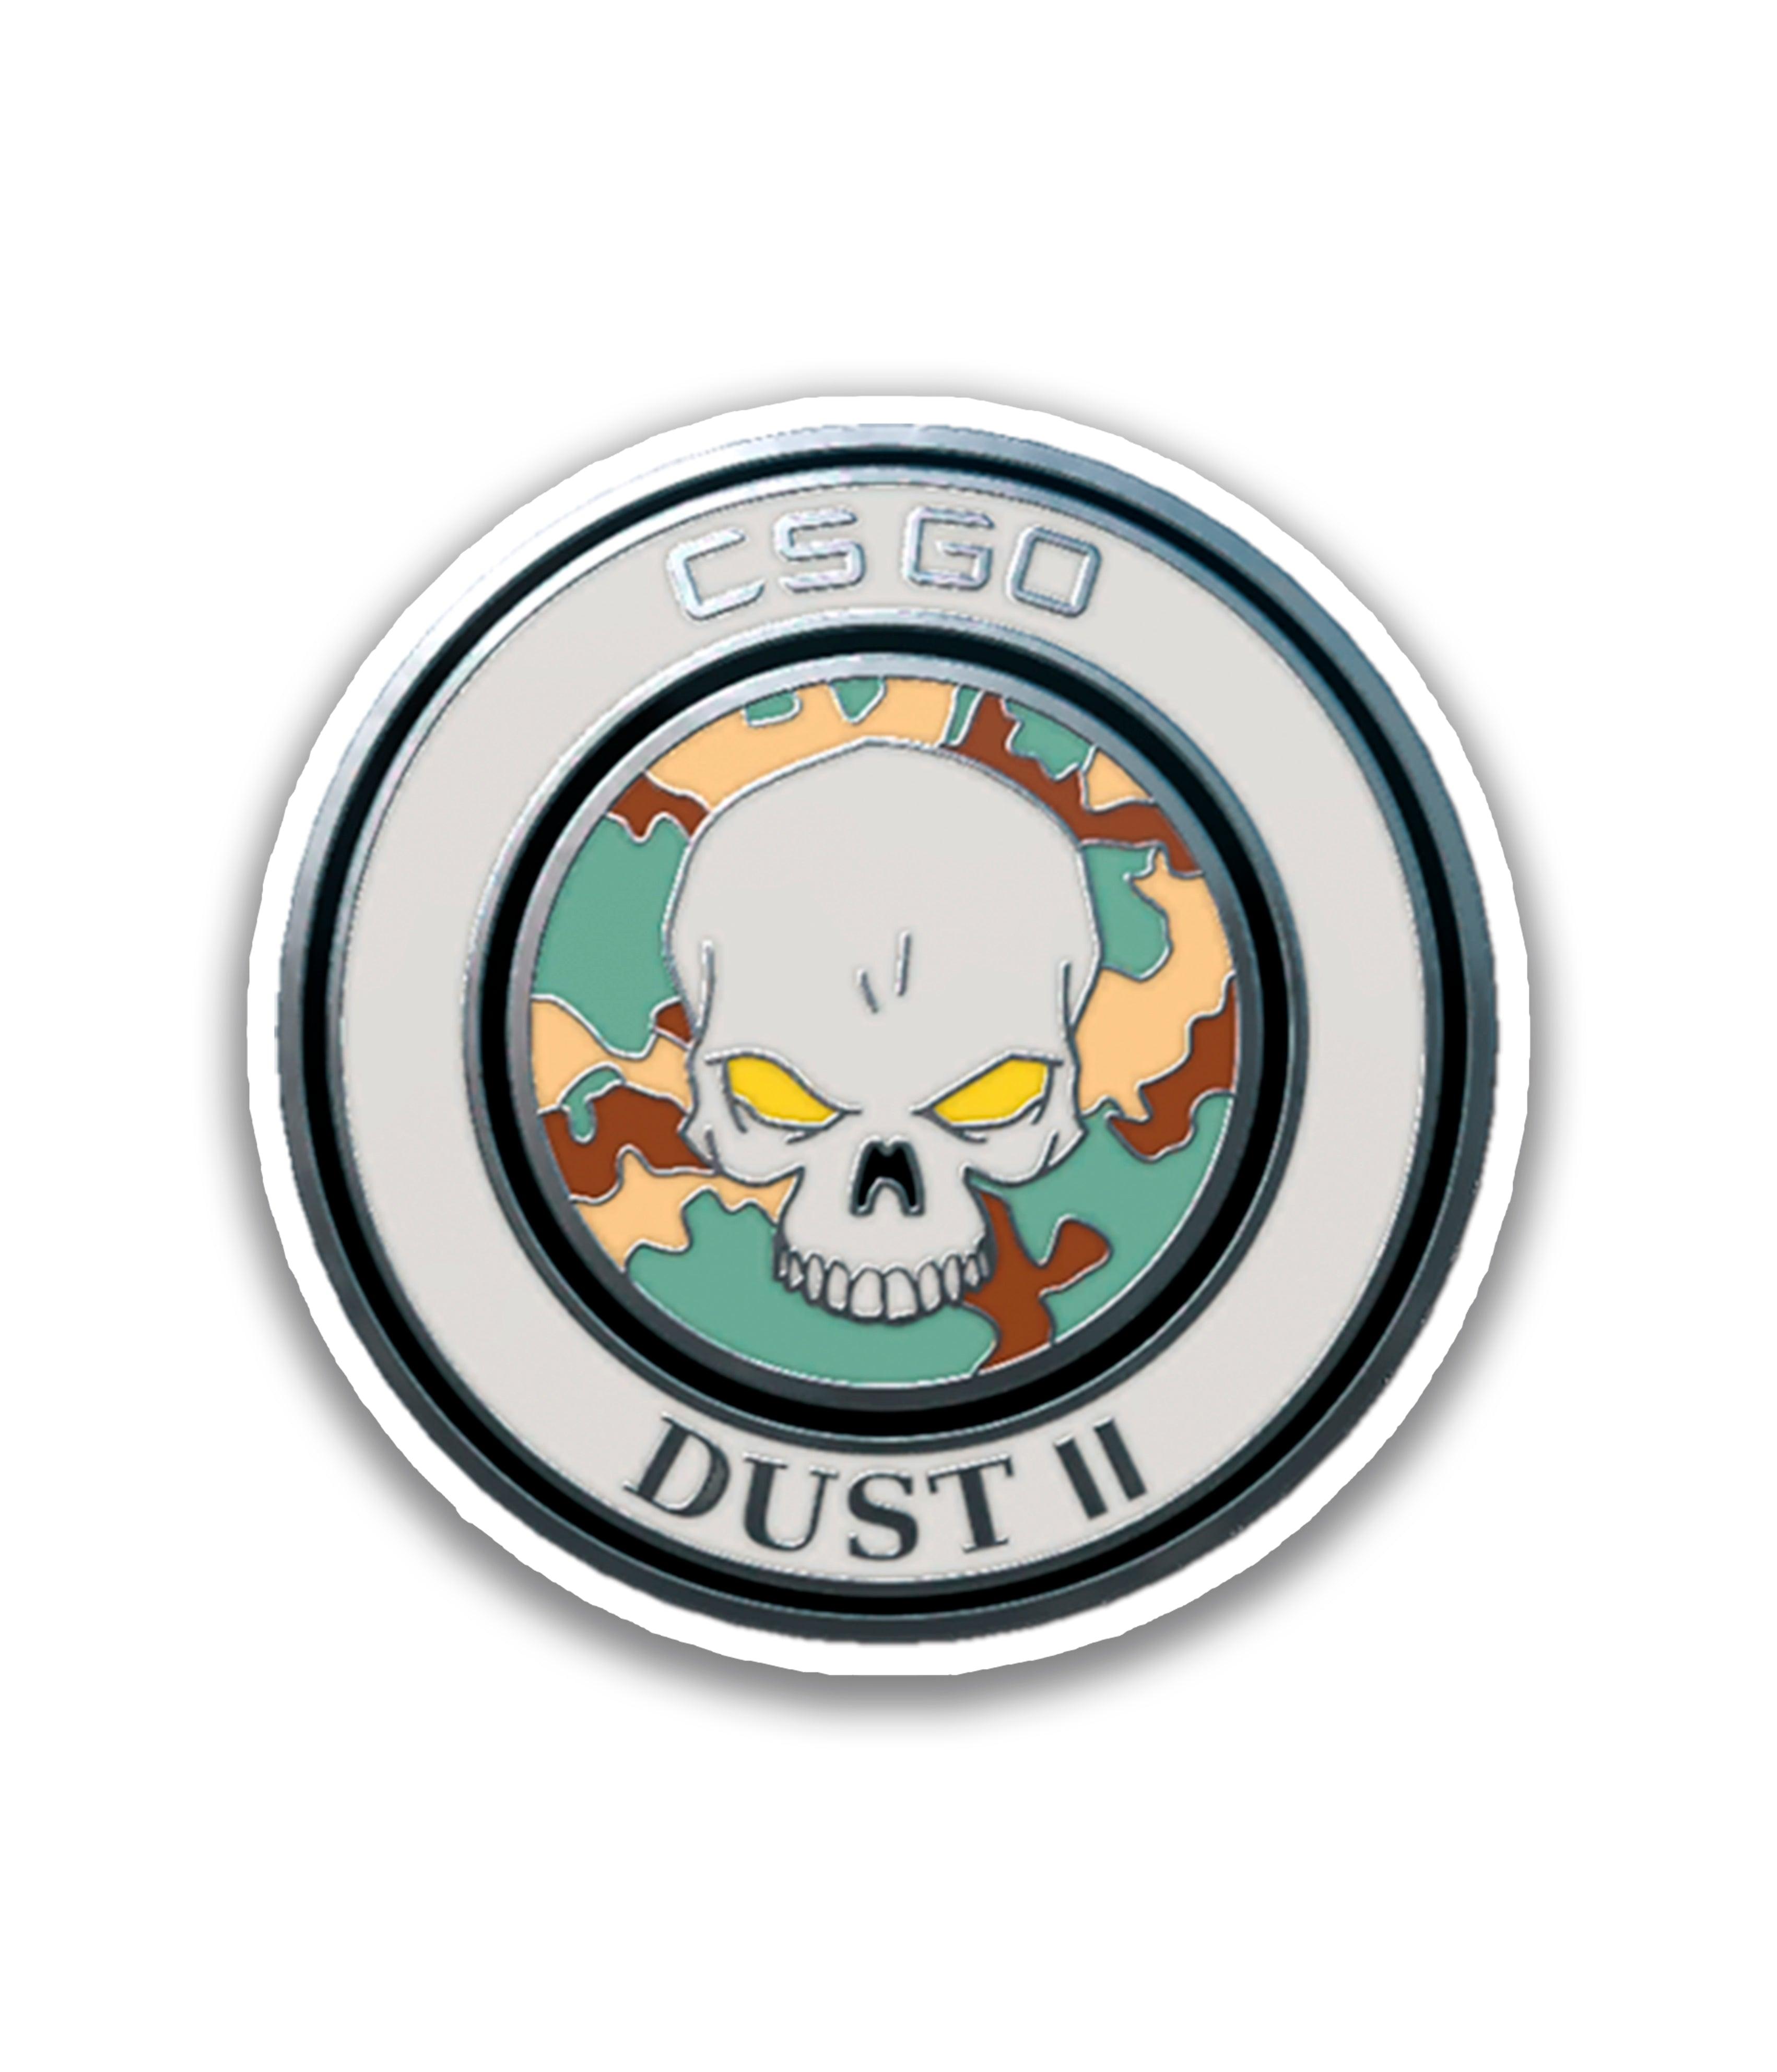 Dust II - Rei do Sticker